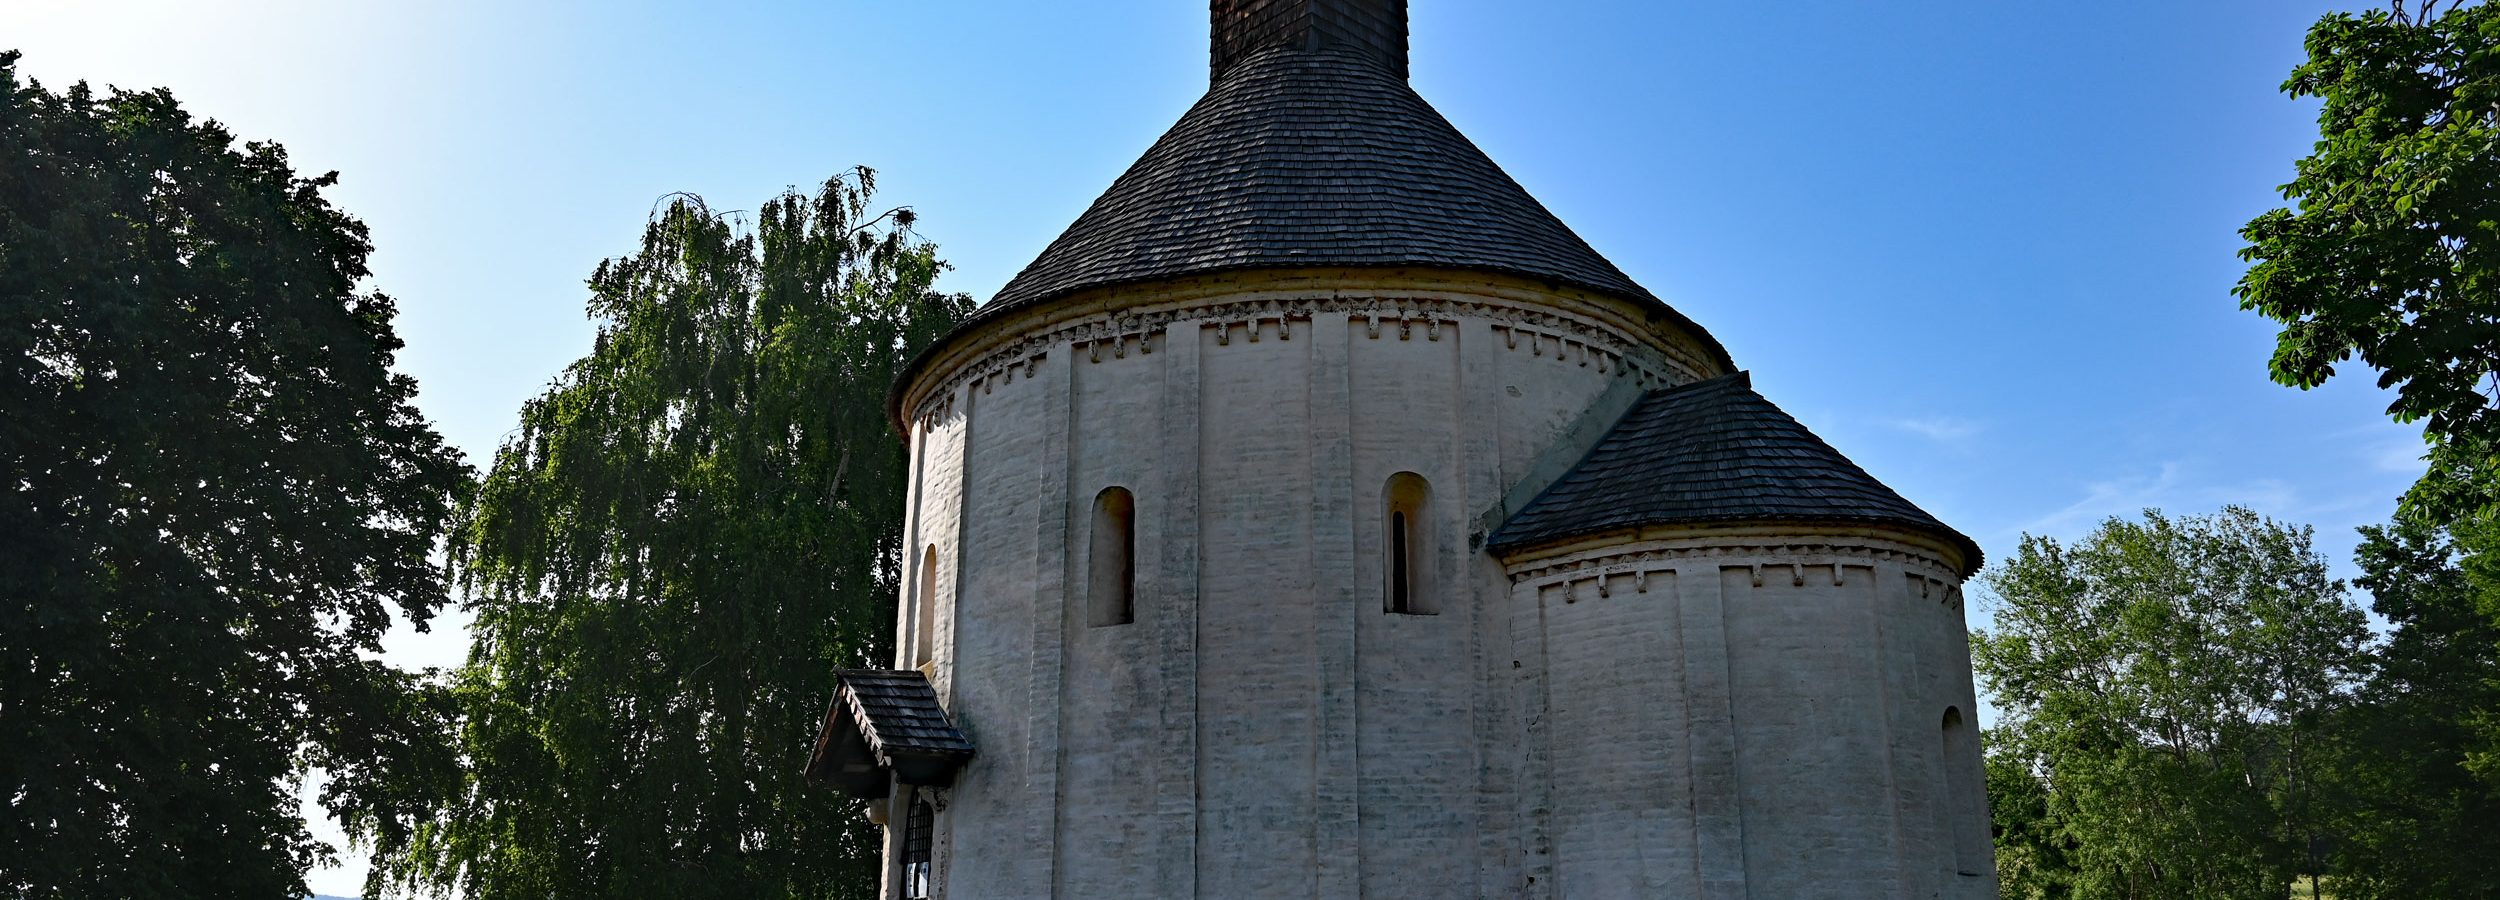 Rotunda św. Mikołaja, Selo, Słowenia